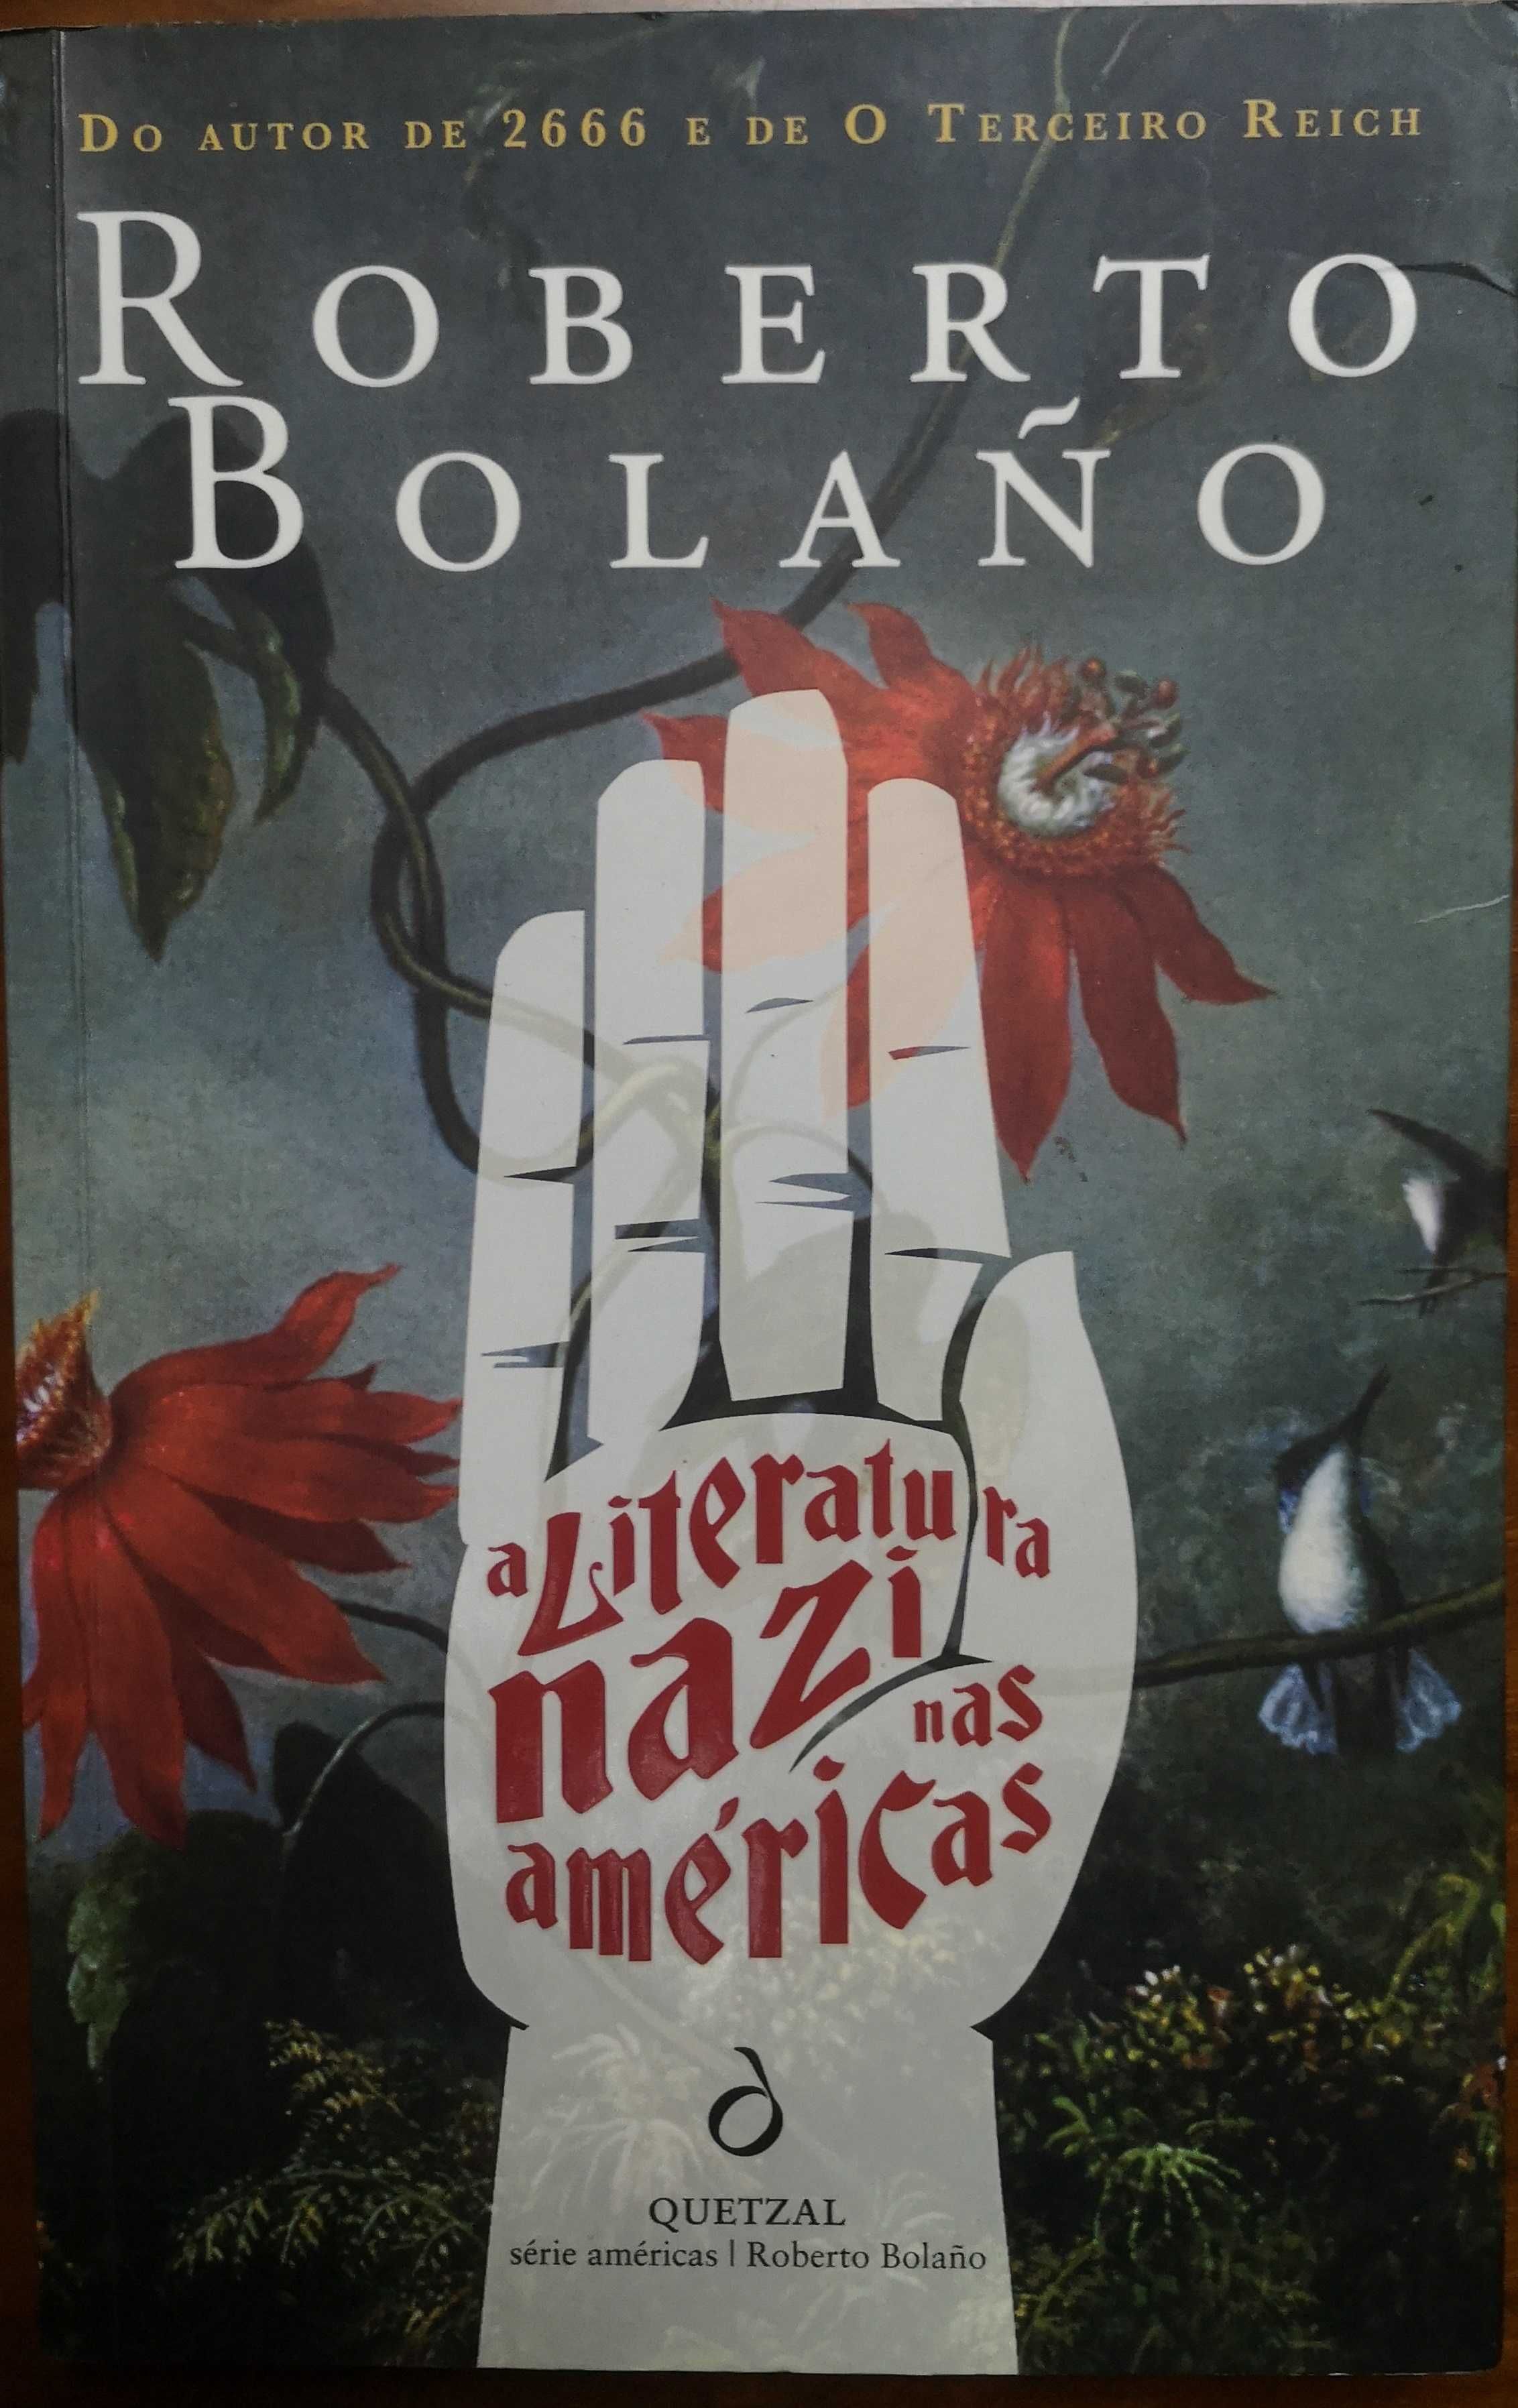 "A Literatura Nazi nas Américas" de de Roberto Bolaño